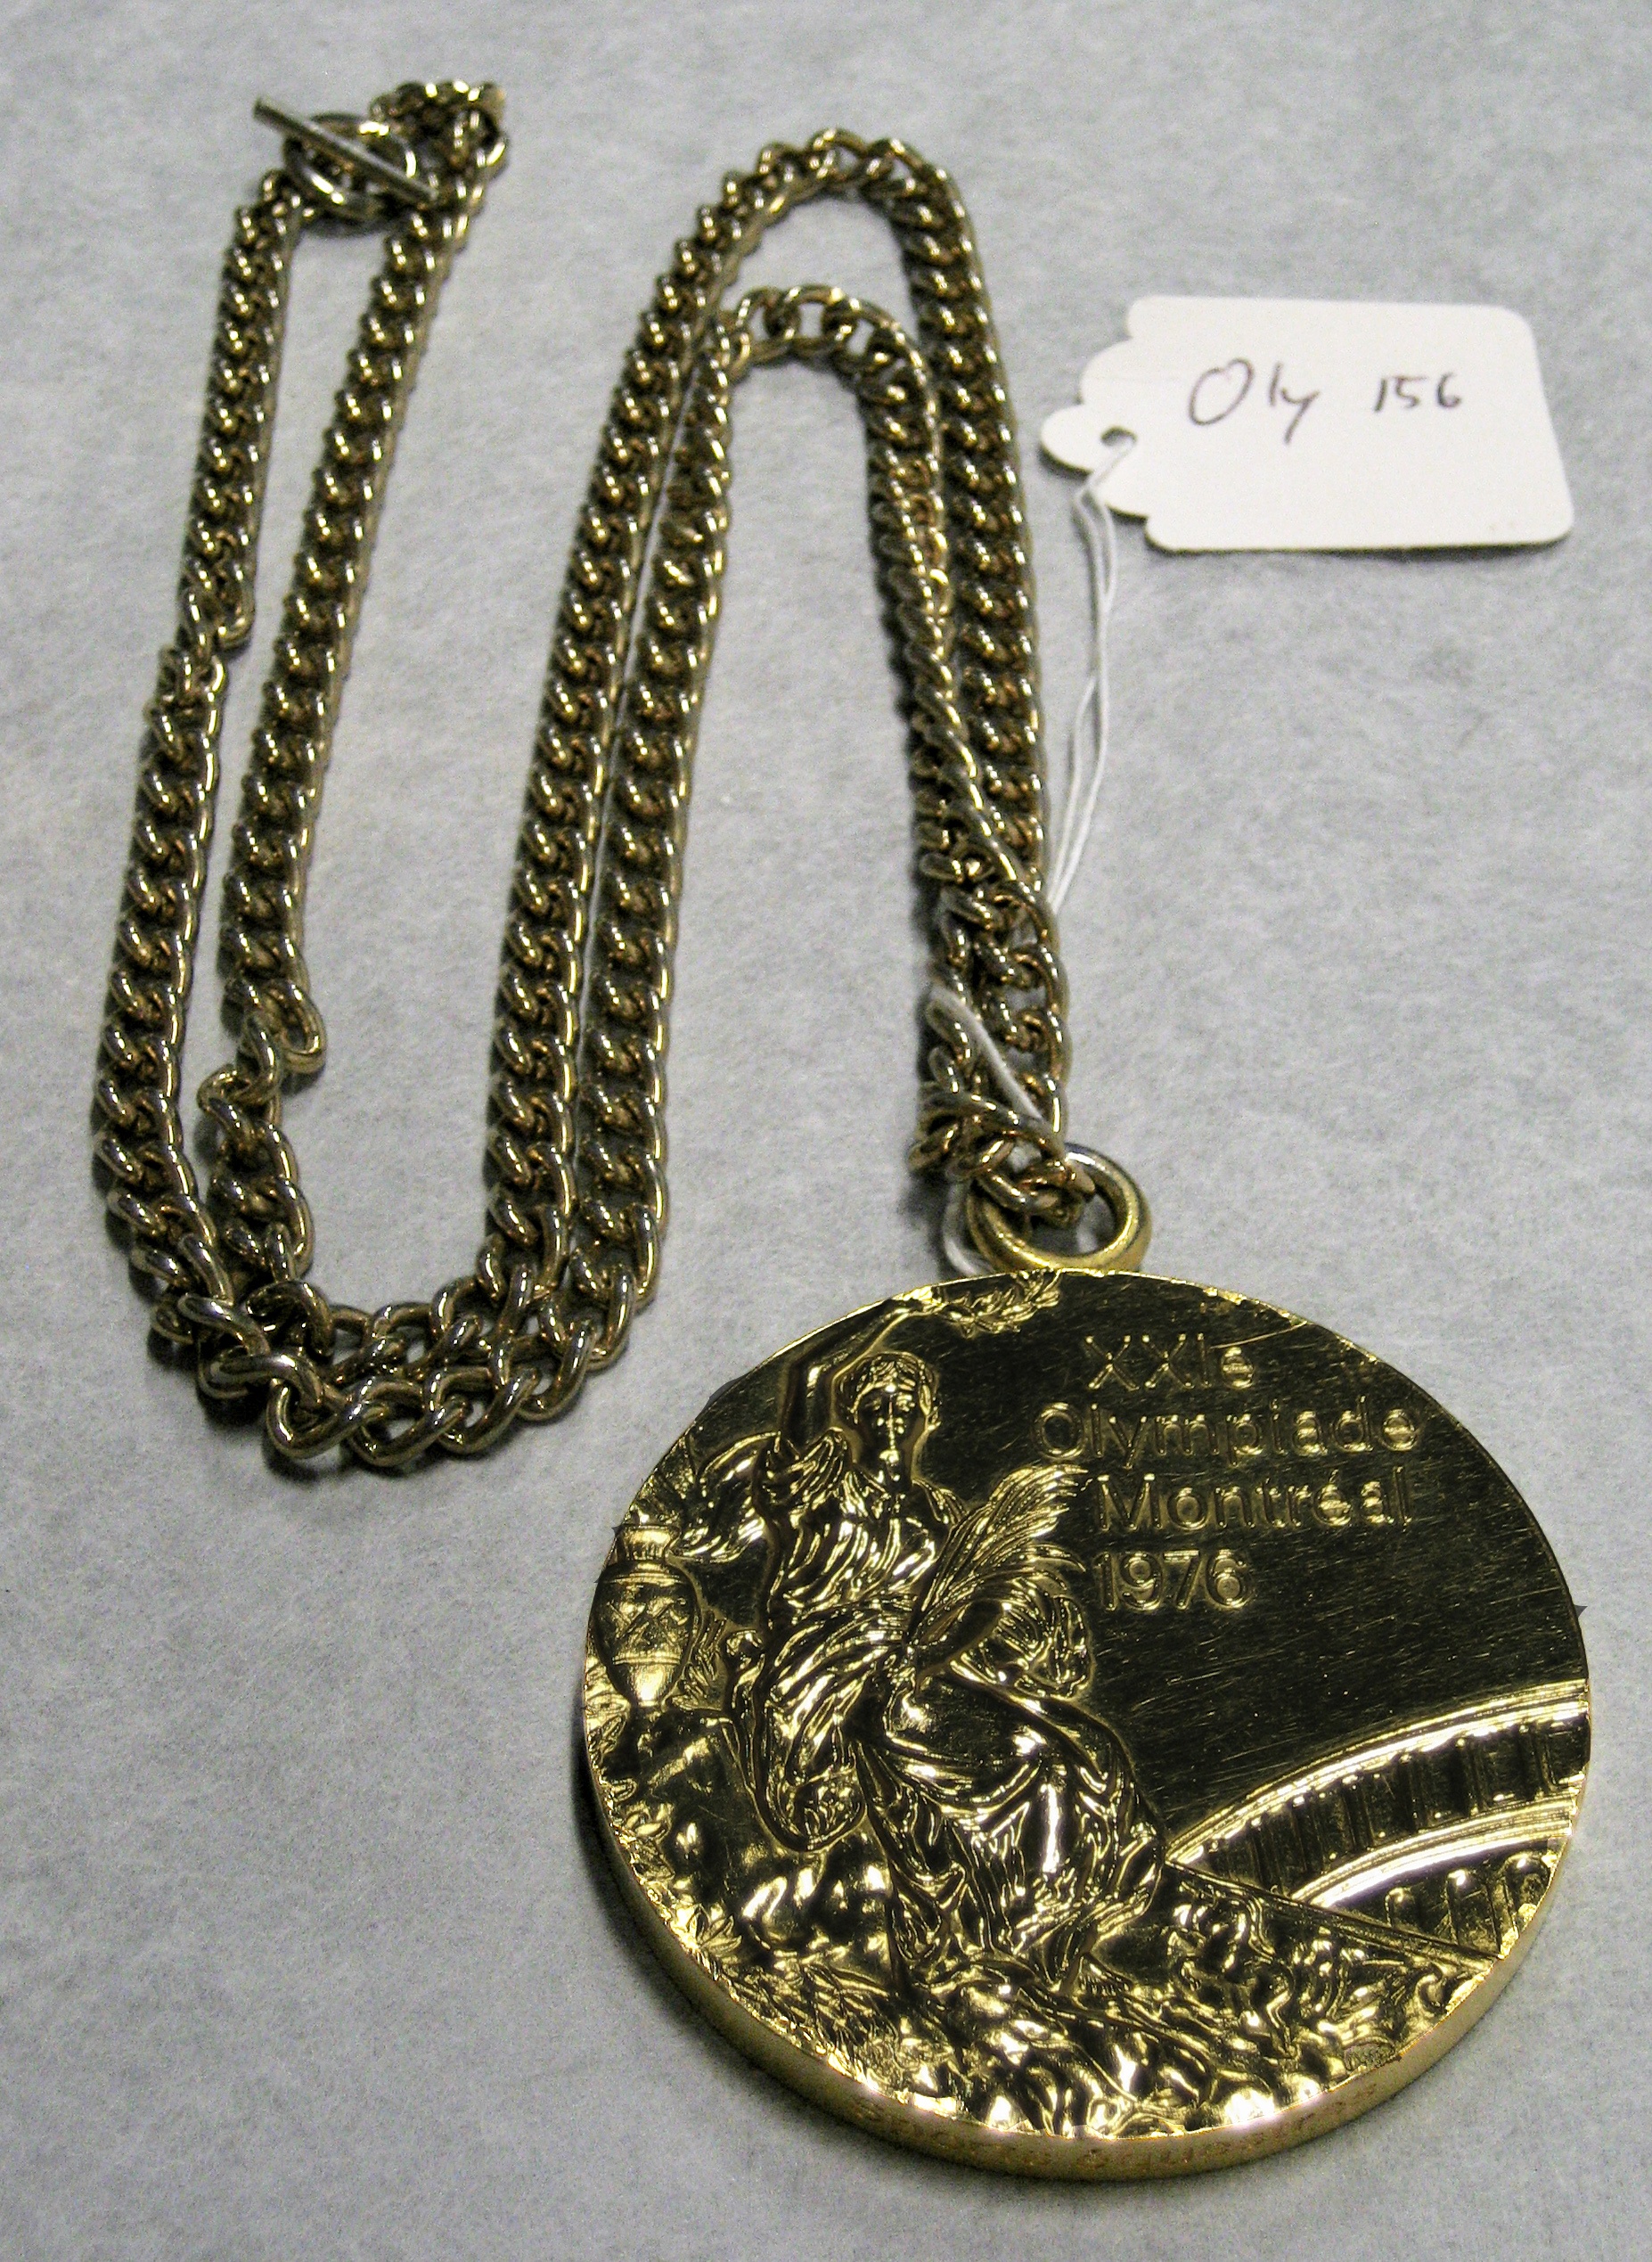 Goldmedaille der olympischen Sommerspiele in Montreal 1976 (Westfälisches Pferdemuseum CC BY-NC-SA)